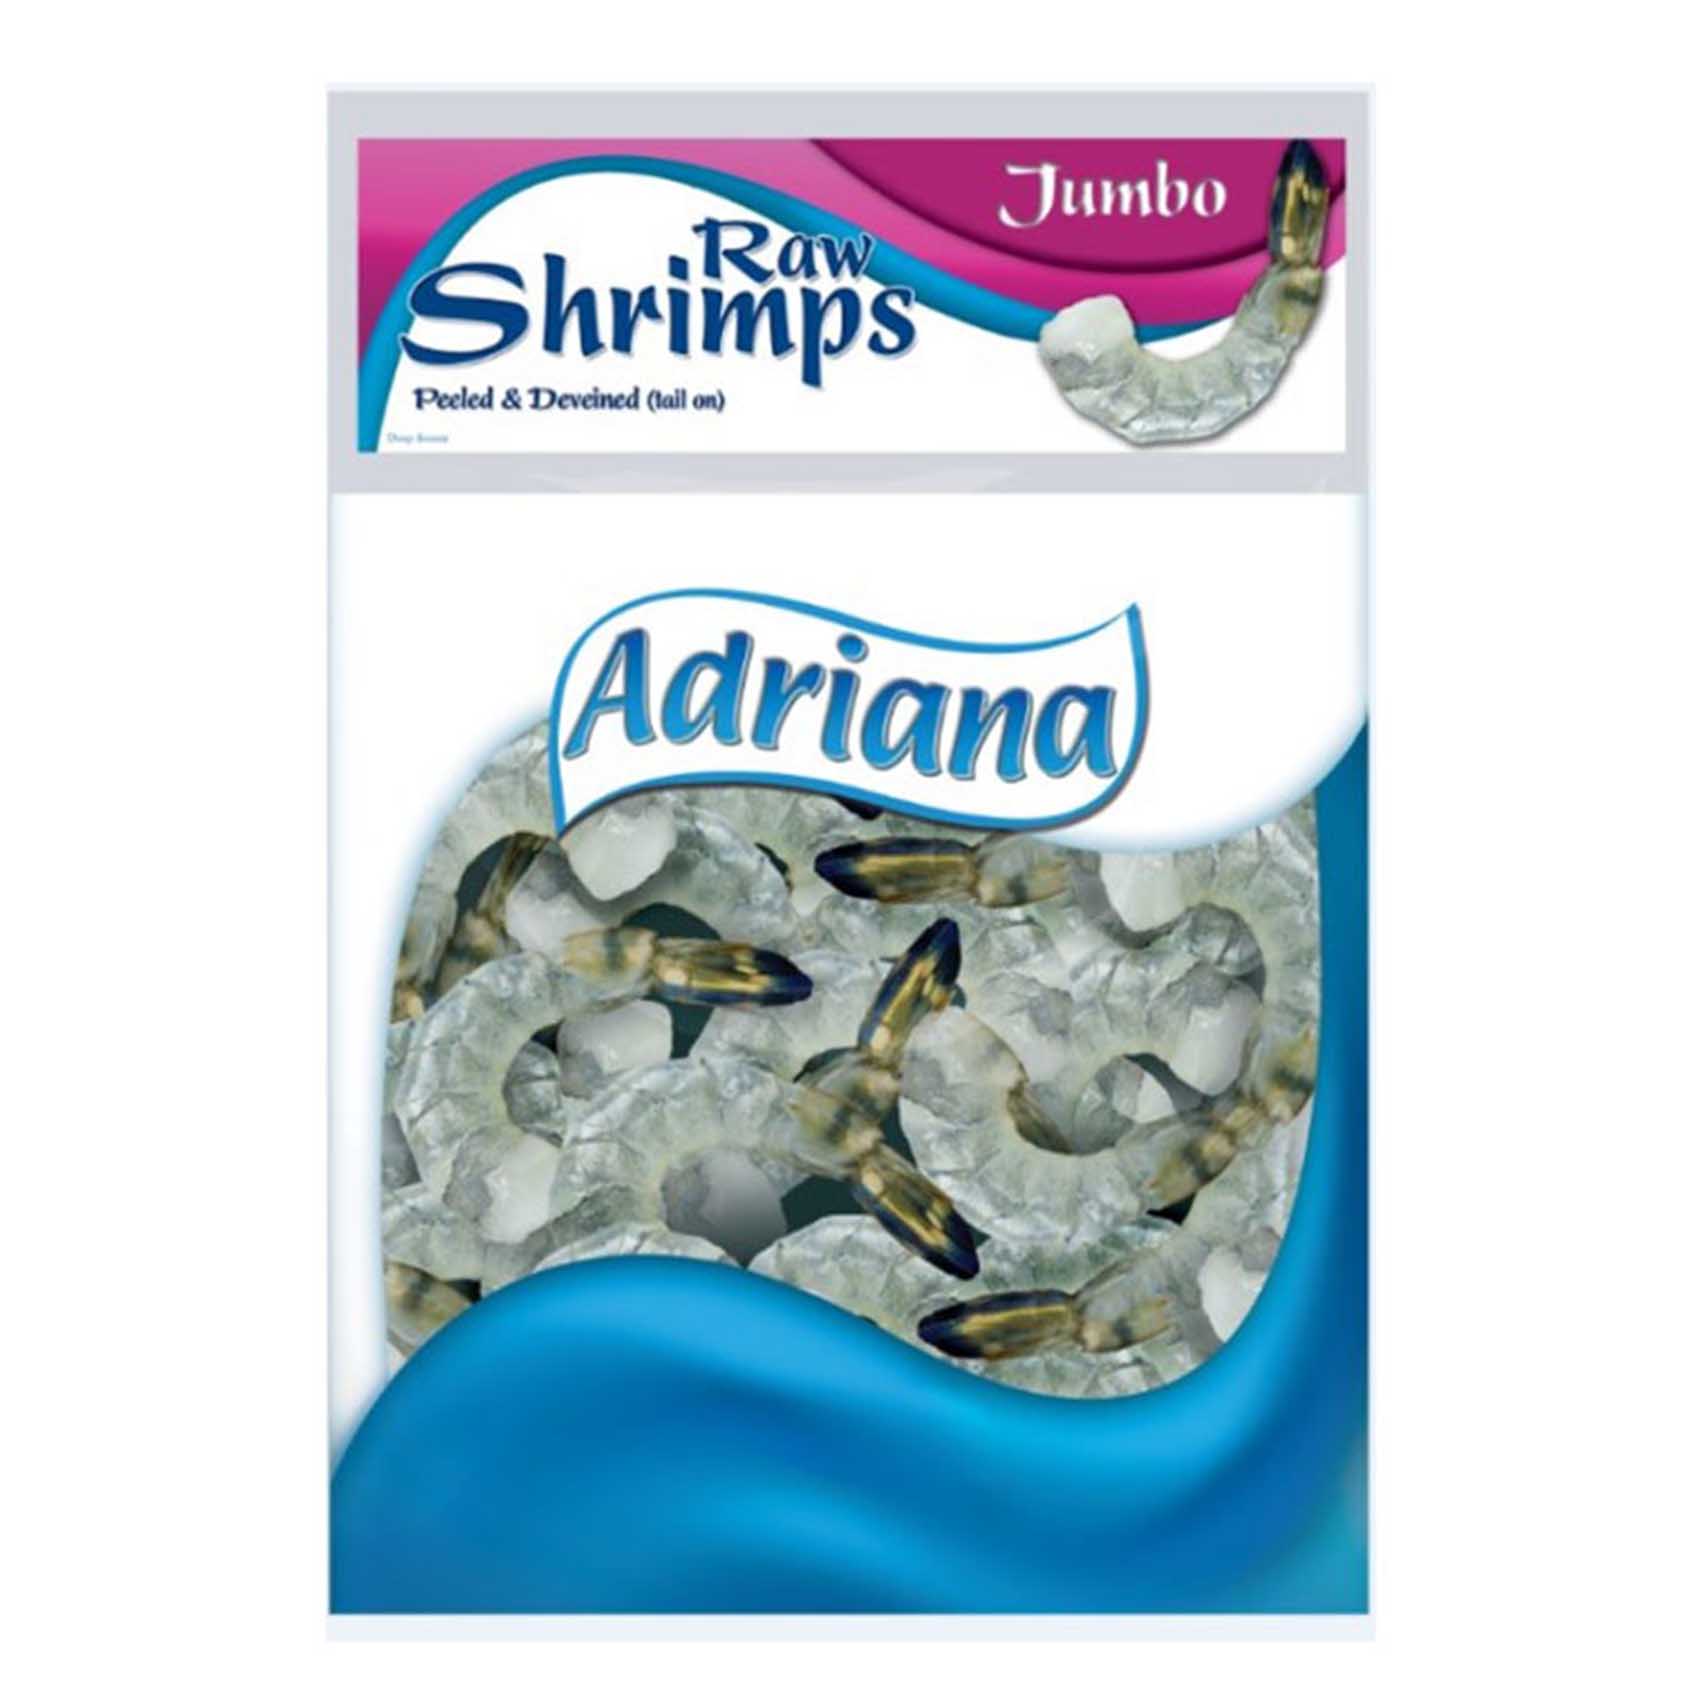 Adriana Raw Jumbo Shrimps 400g